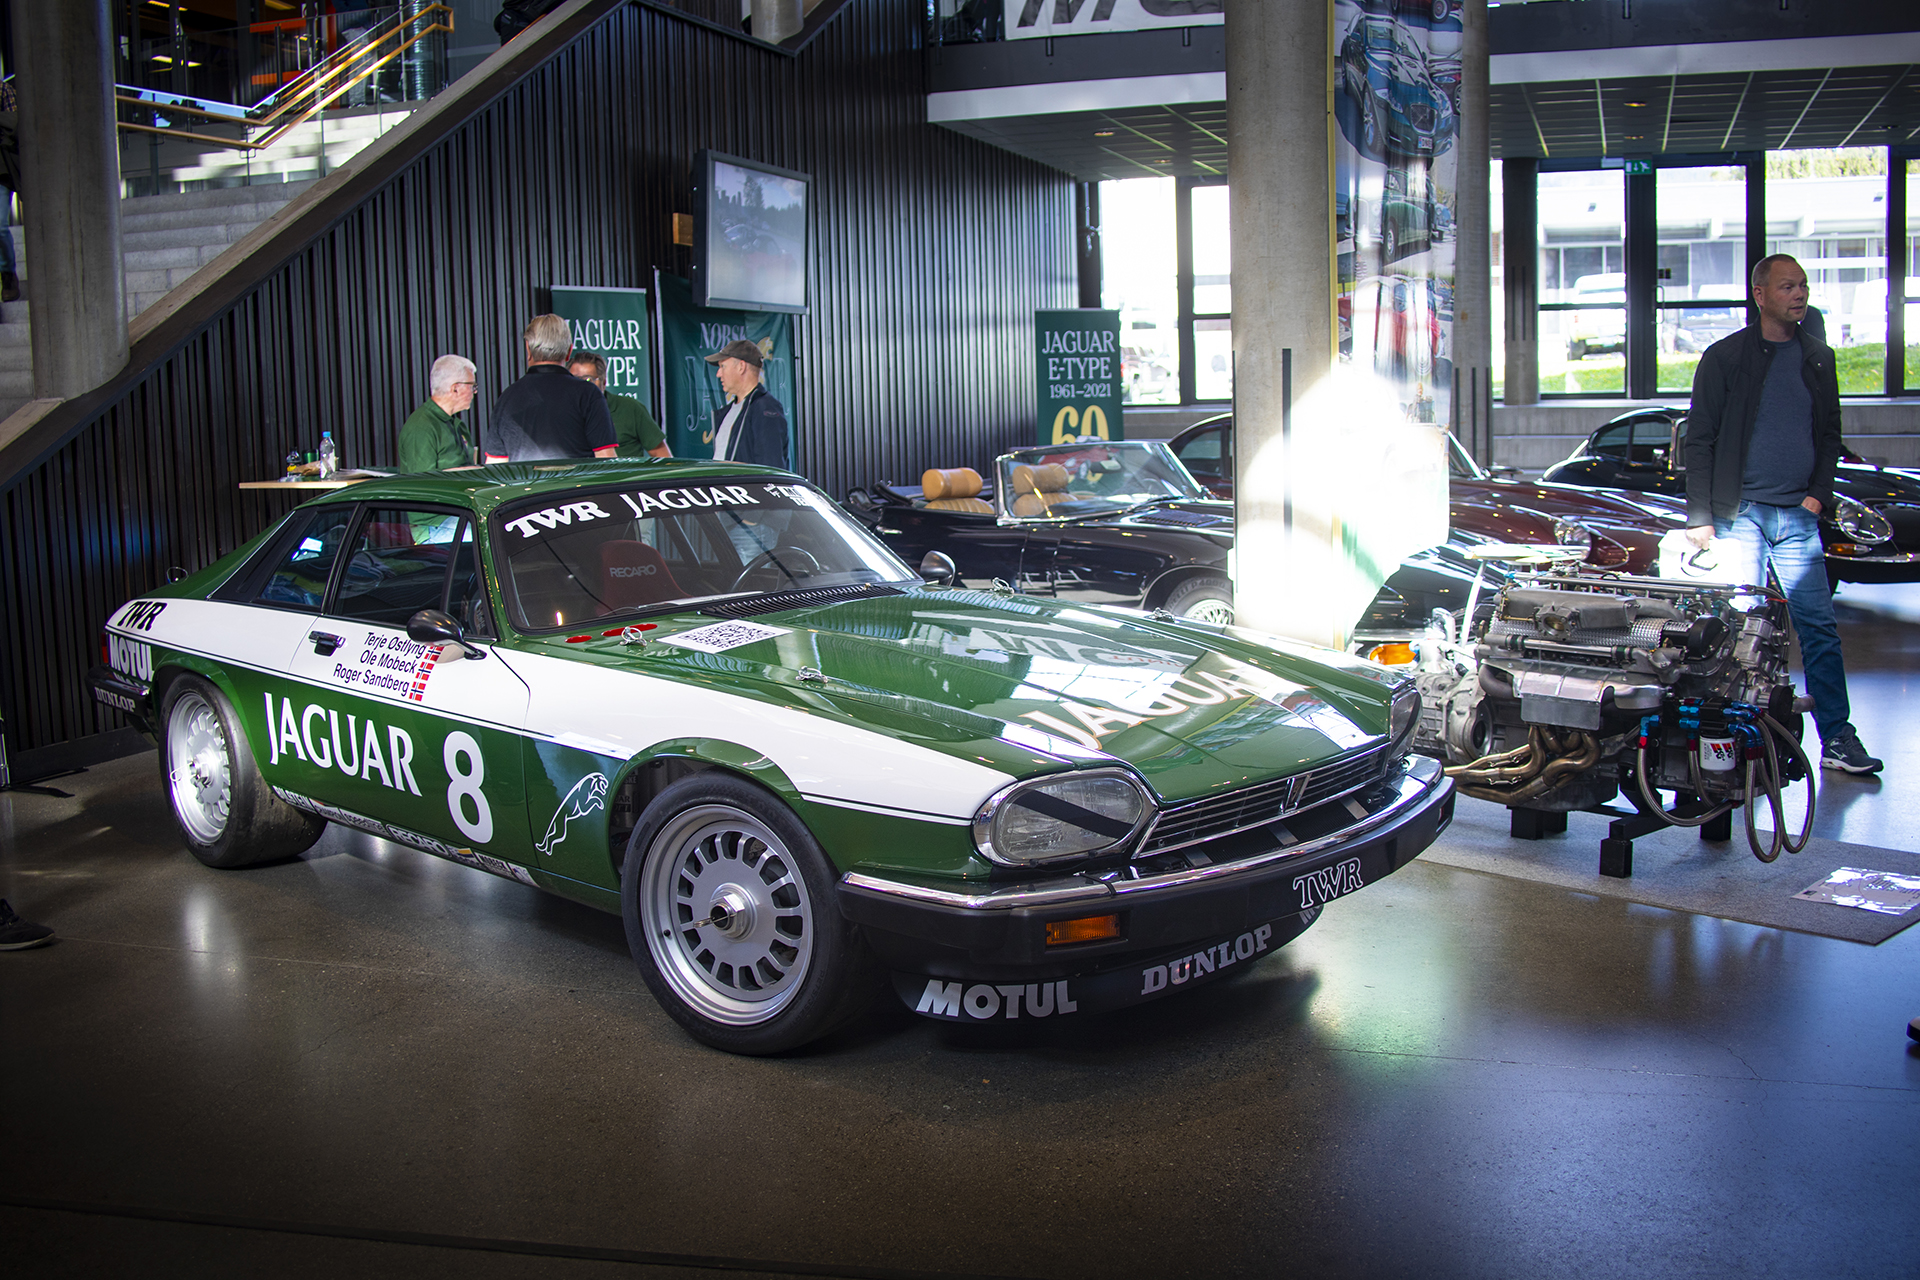 Ved inngangen hadde Ole Mobeck og Terje Østlyng rigget frem sitt Jaguar XJS TWR-tribute-prosjekt